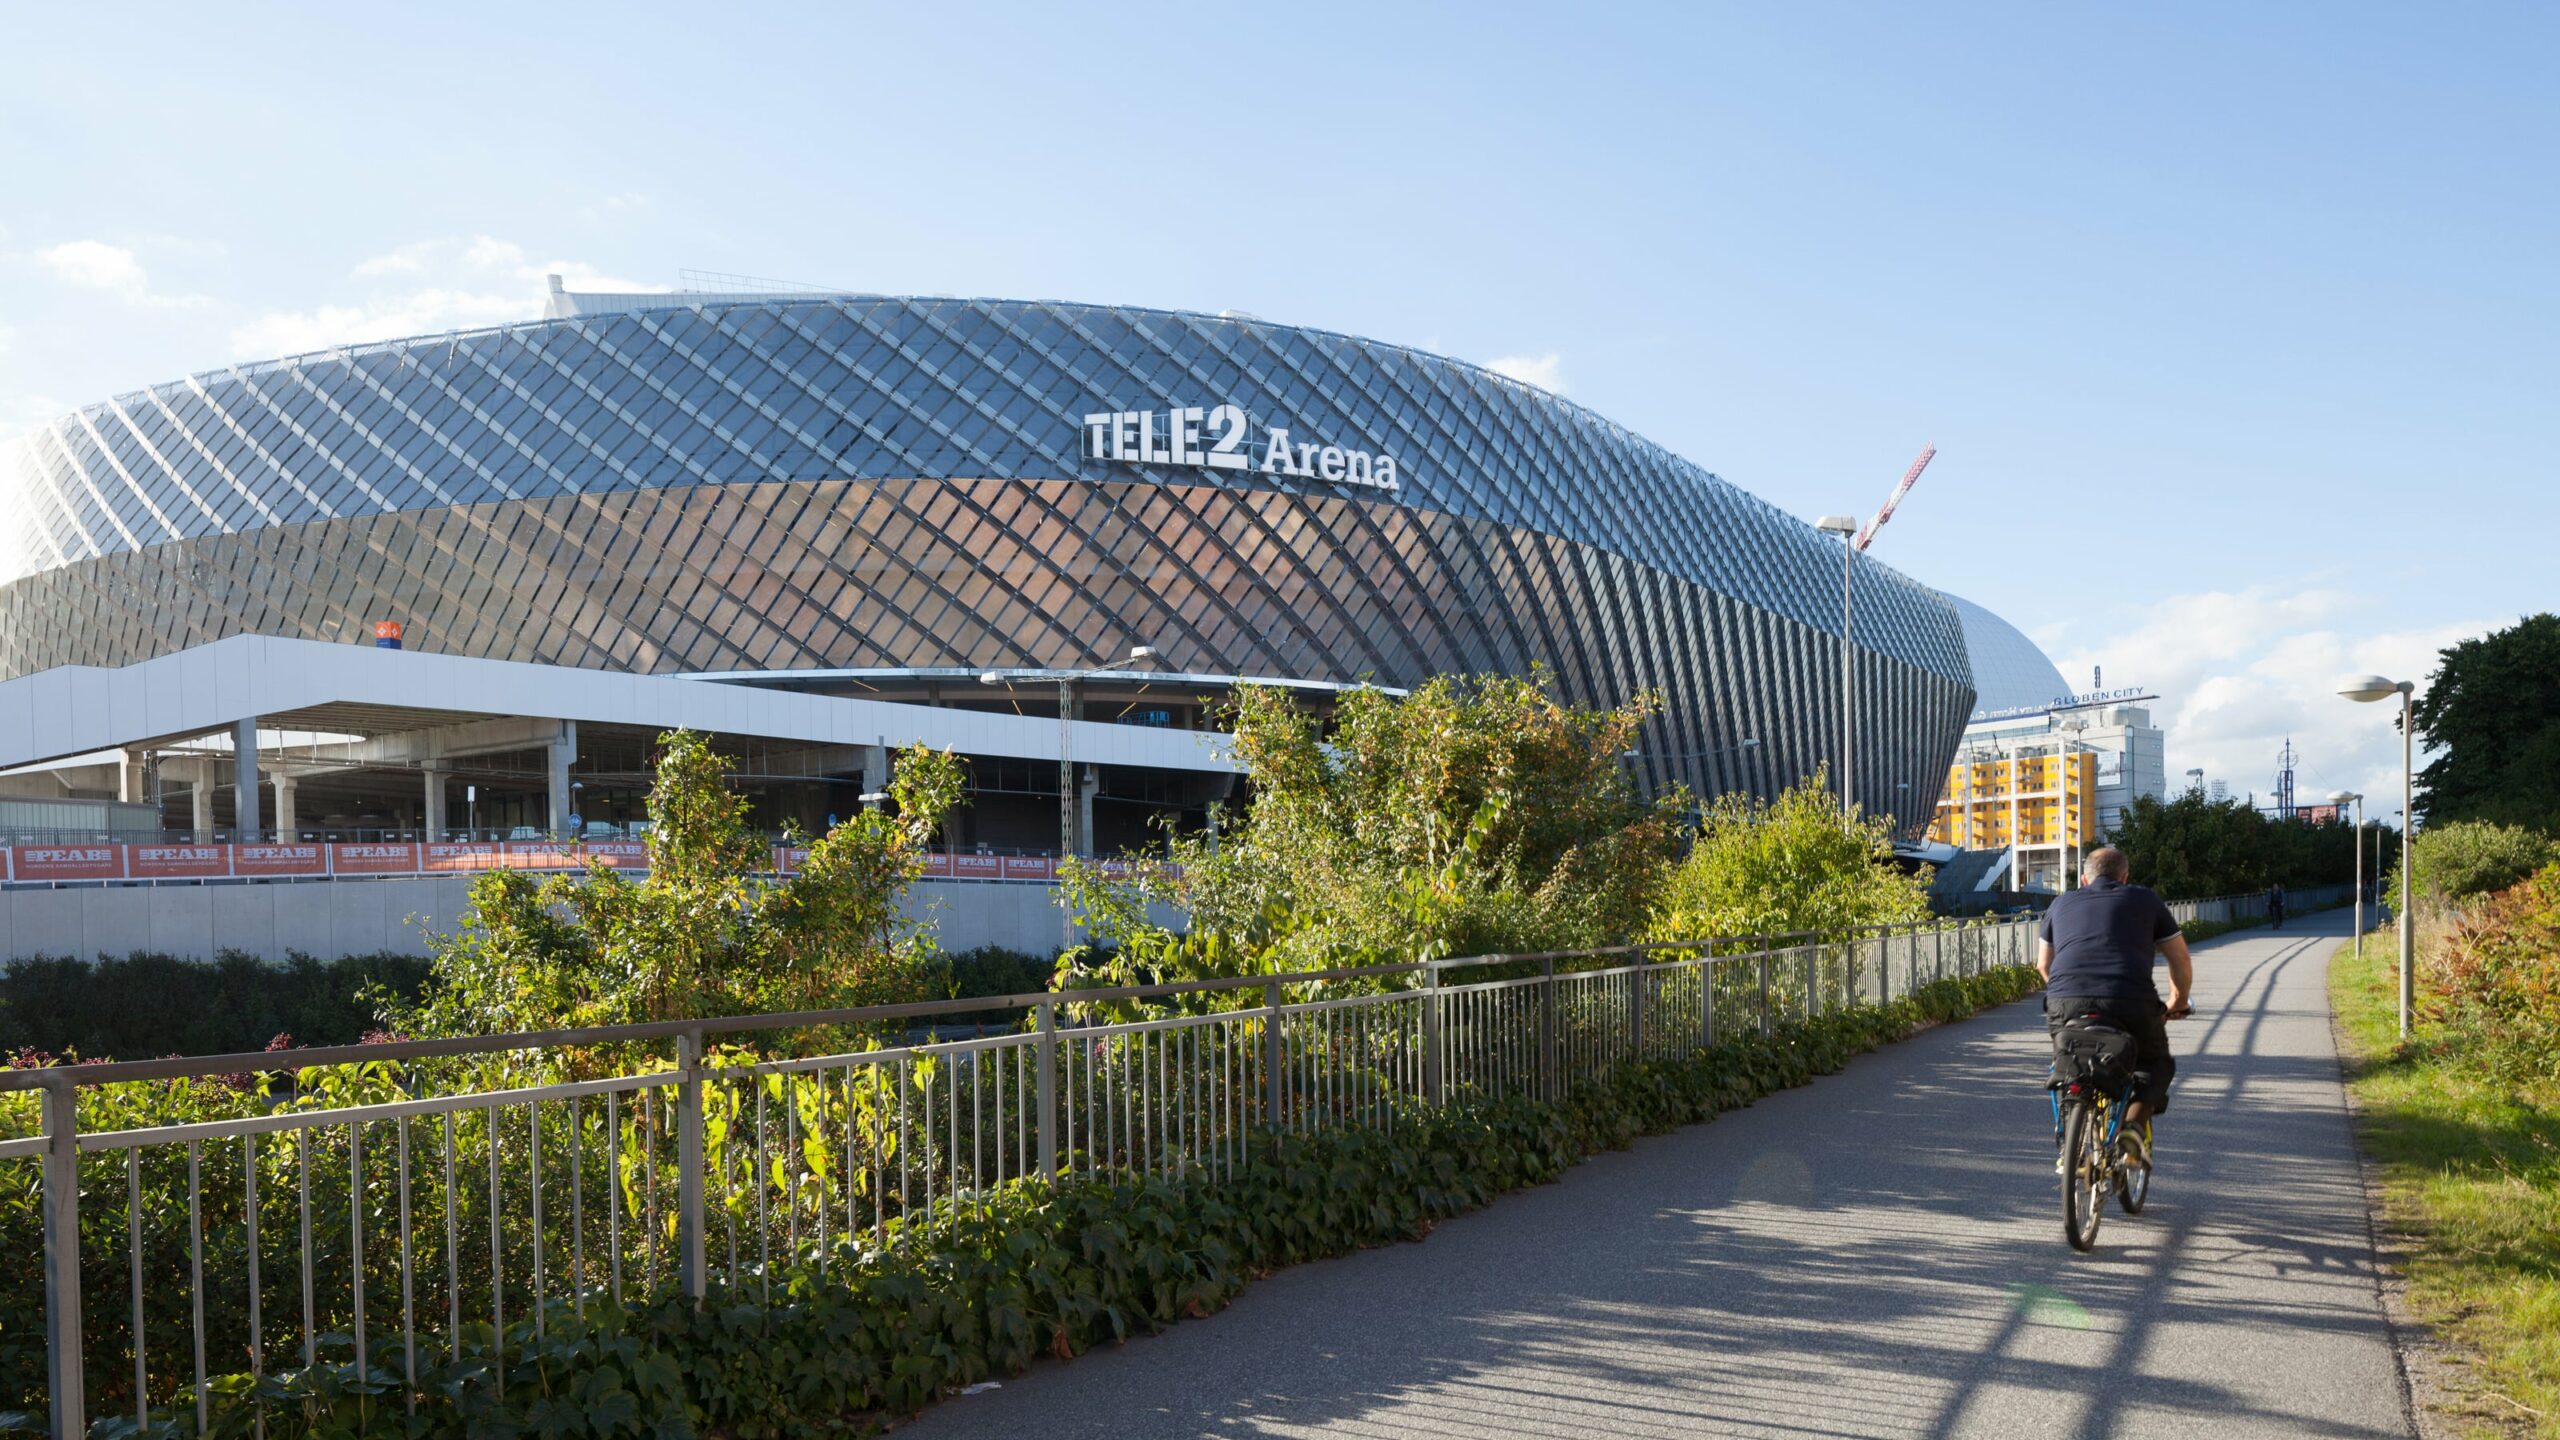 Tele2 Arena in Stockholm